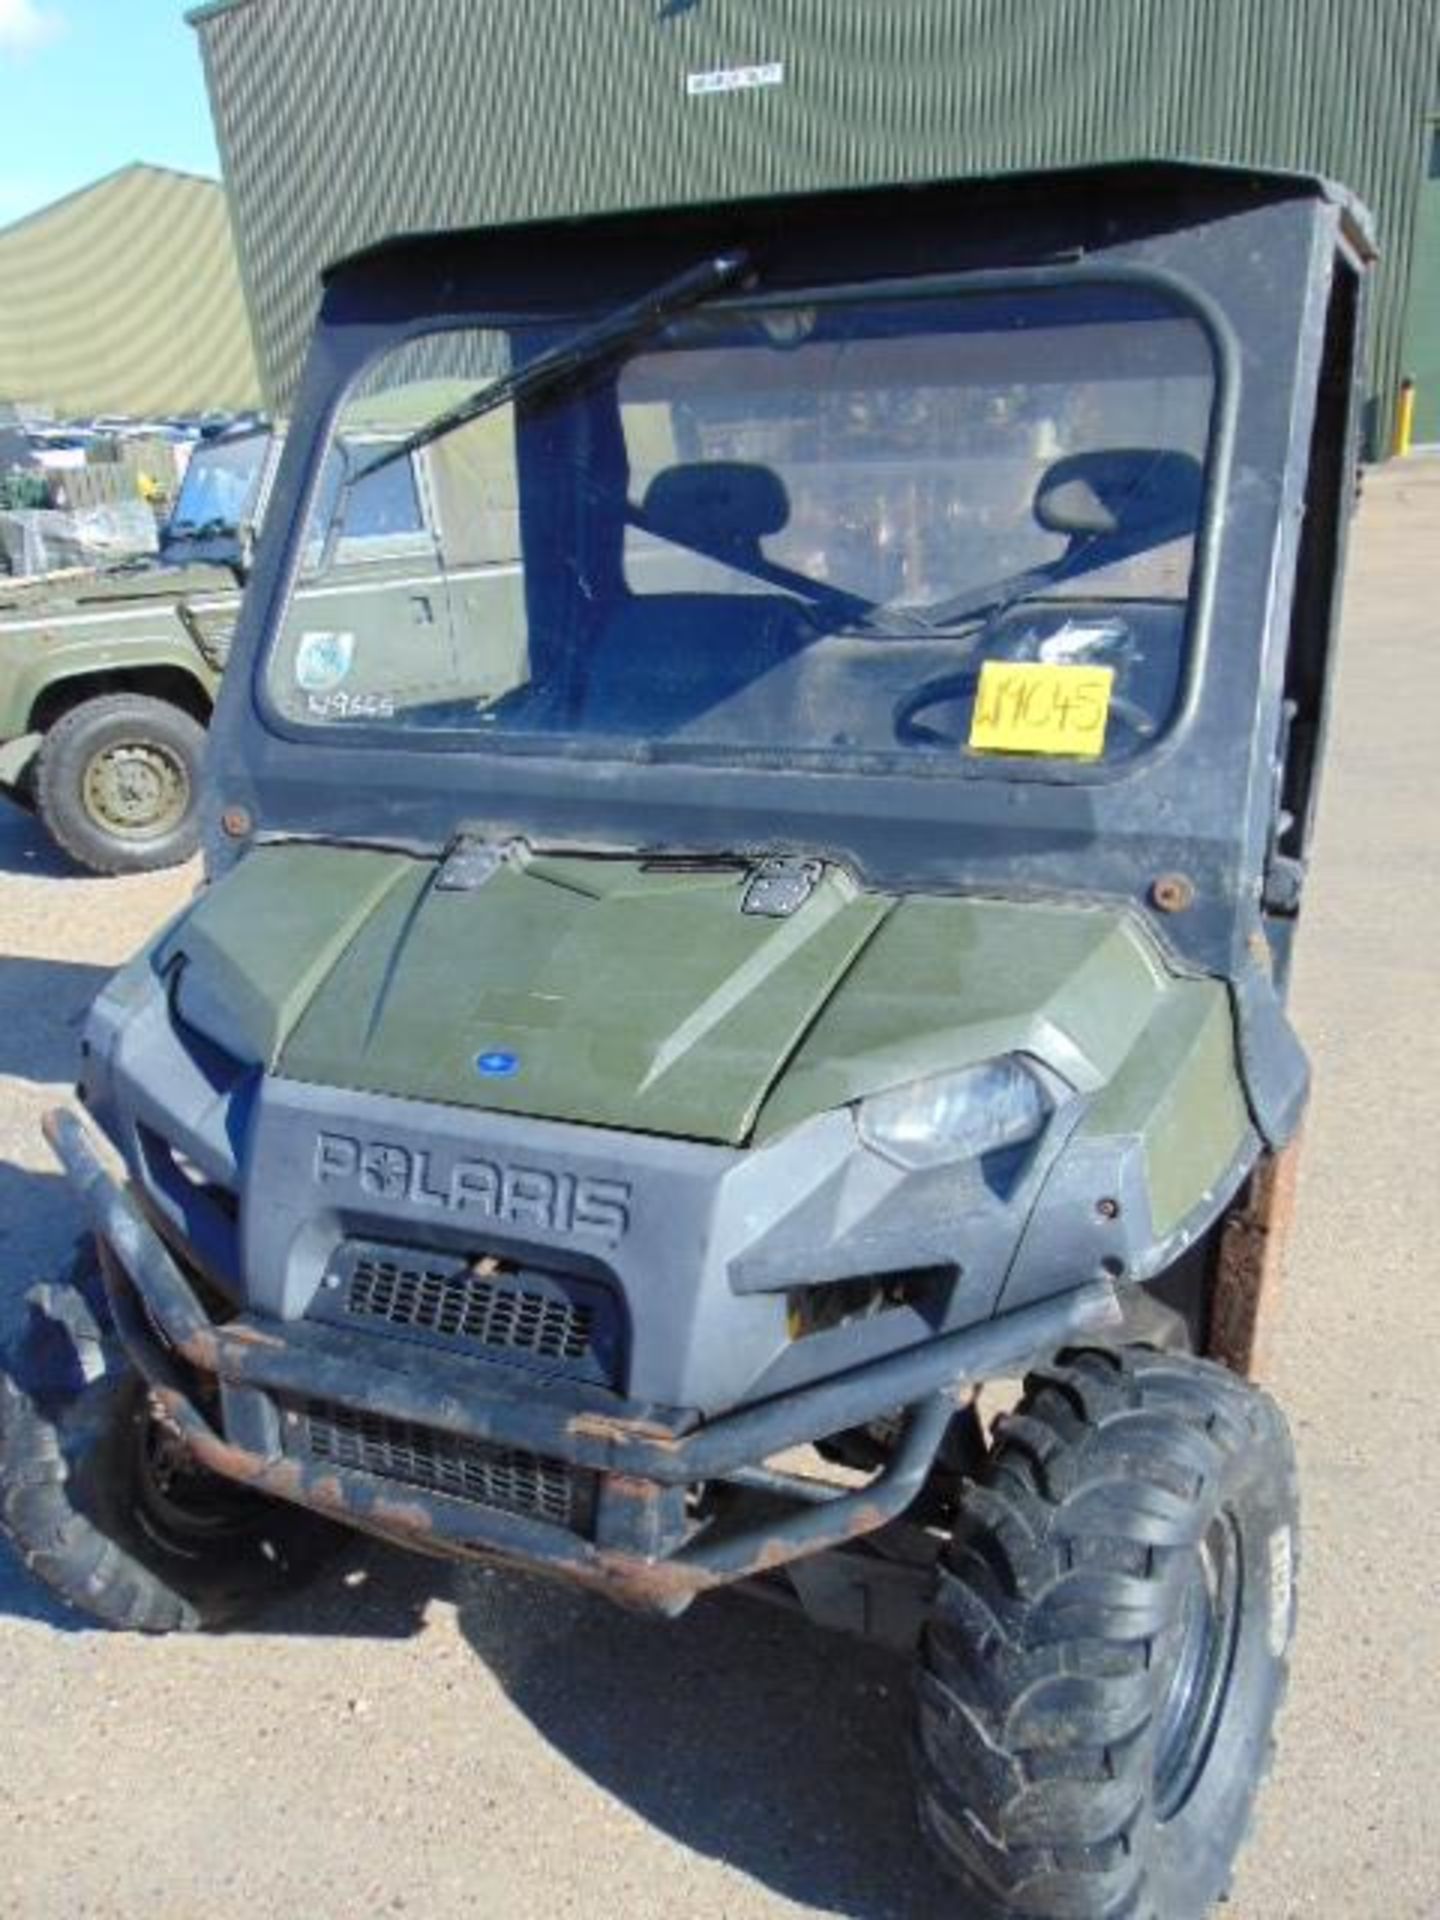 Polaris Ranger 900 4WD ATV